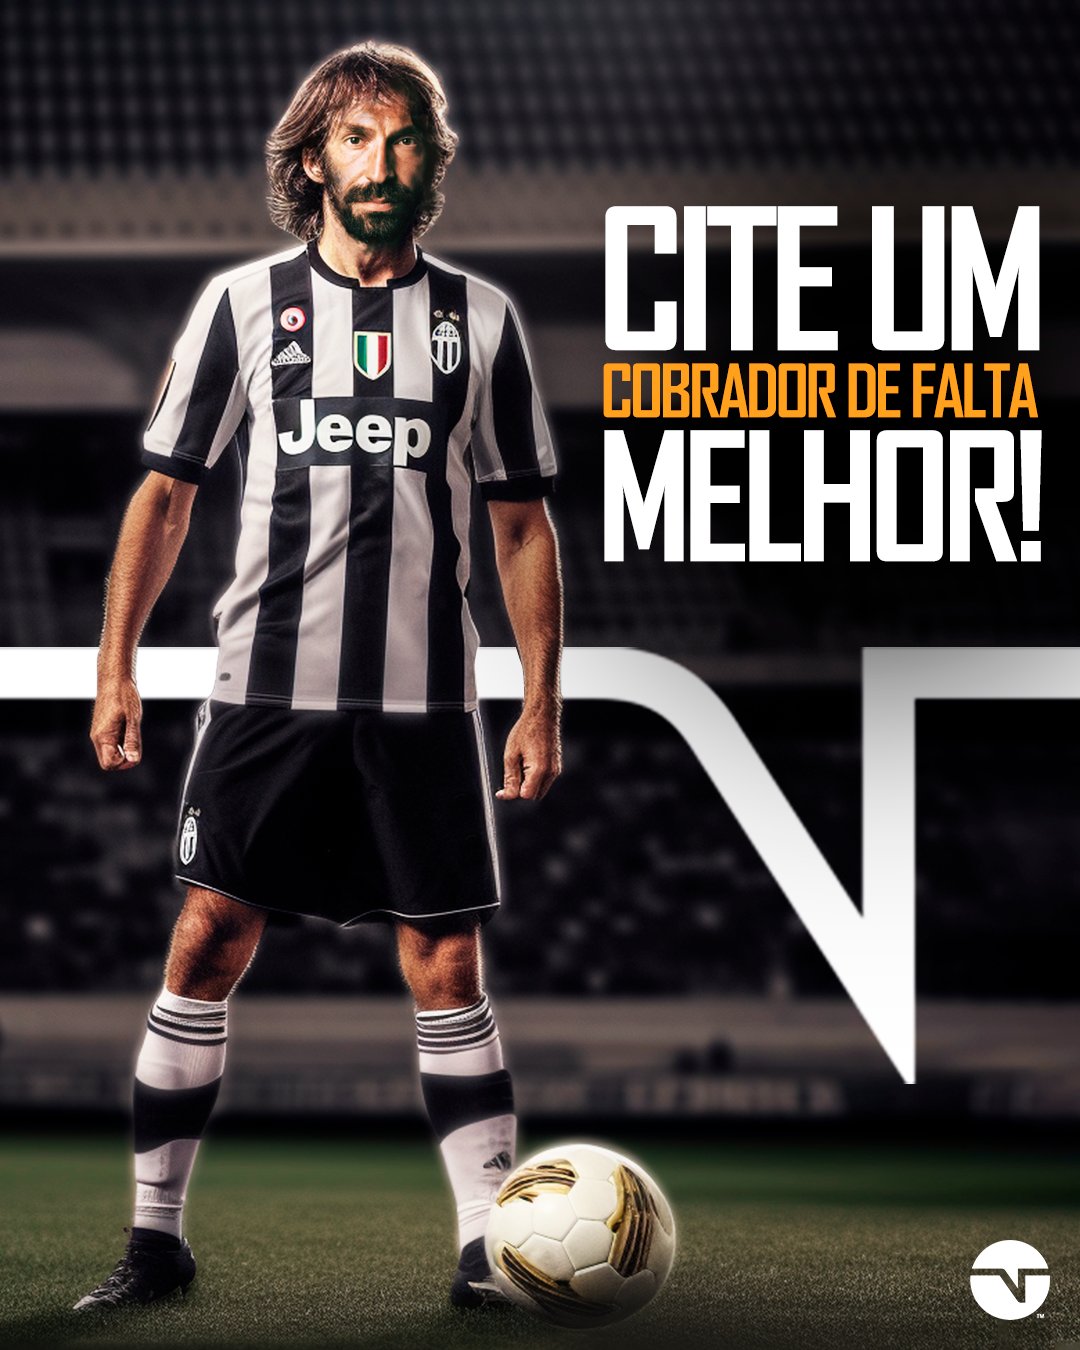 TNT Sports Brasil - No aniversário do cara, um desafio: cite um